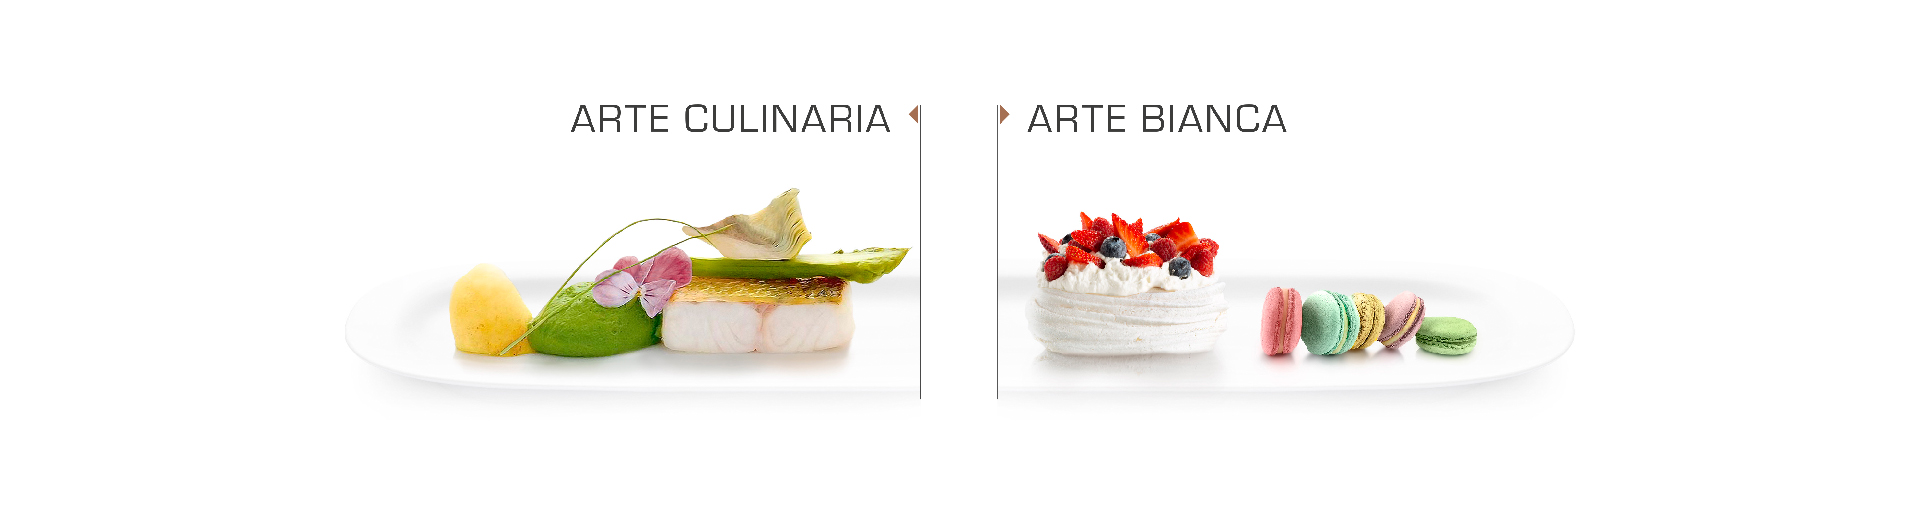 Arte Culinaria - Arte Bianca